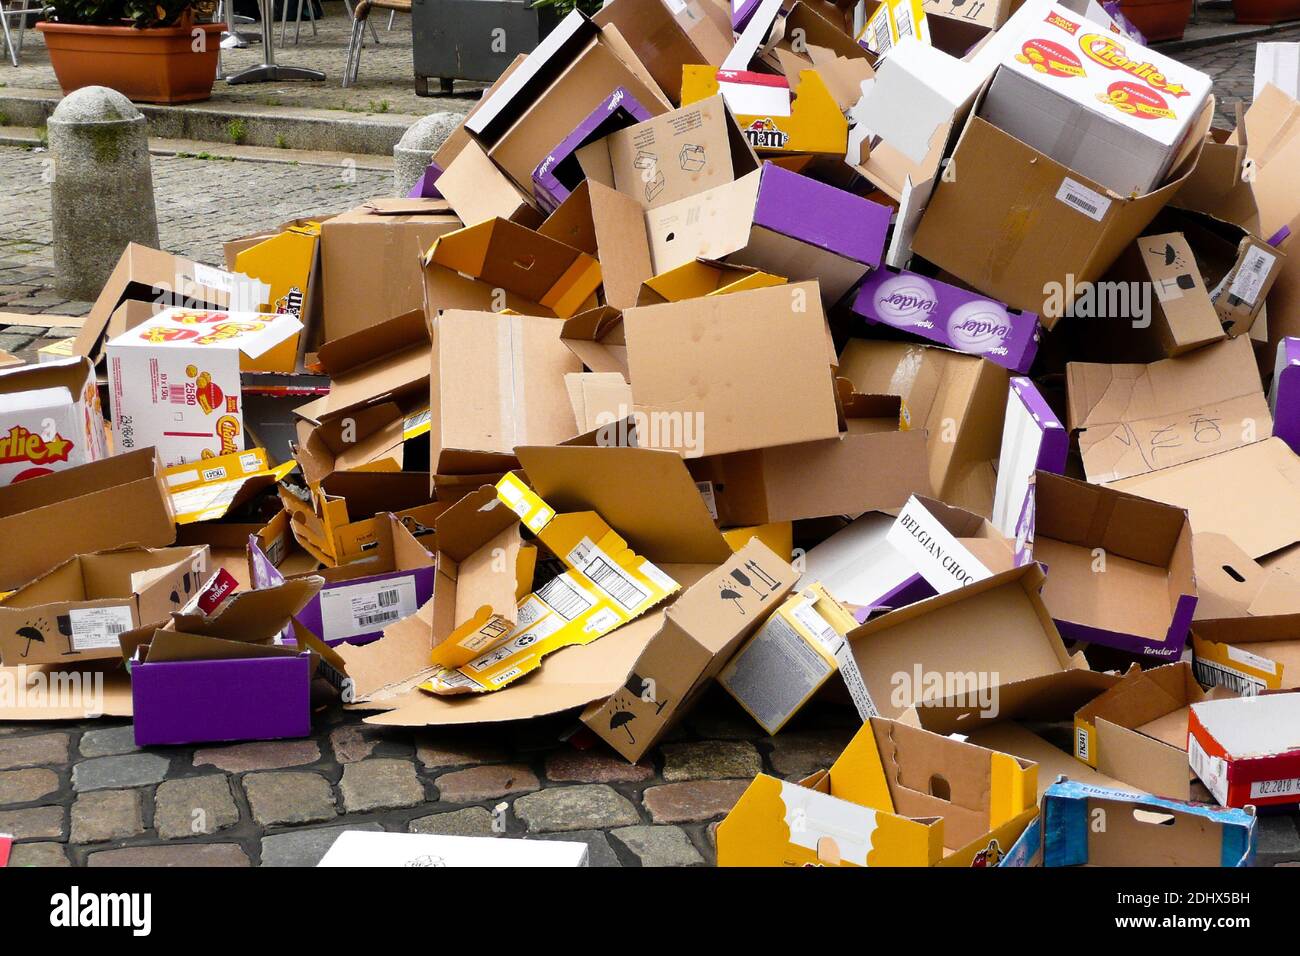 Verpackungsmuell, Hamburger Fischmarkt, Kartons, Holz, Boxen, Papier, Muell, Muellentsprgung, Recycling, Umweltverschmutzung, Foto Stock